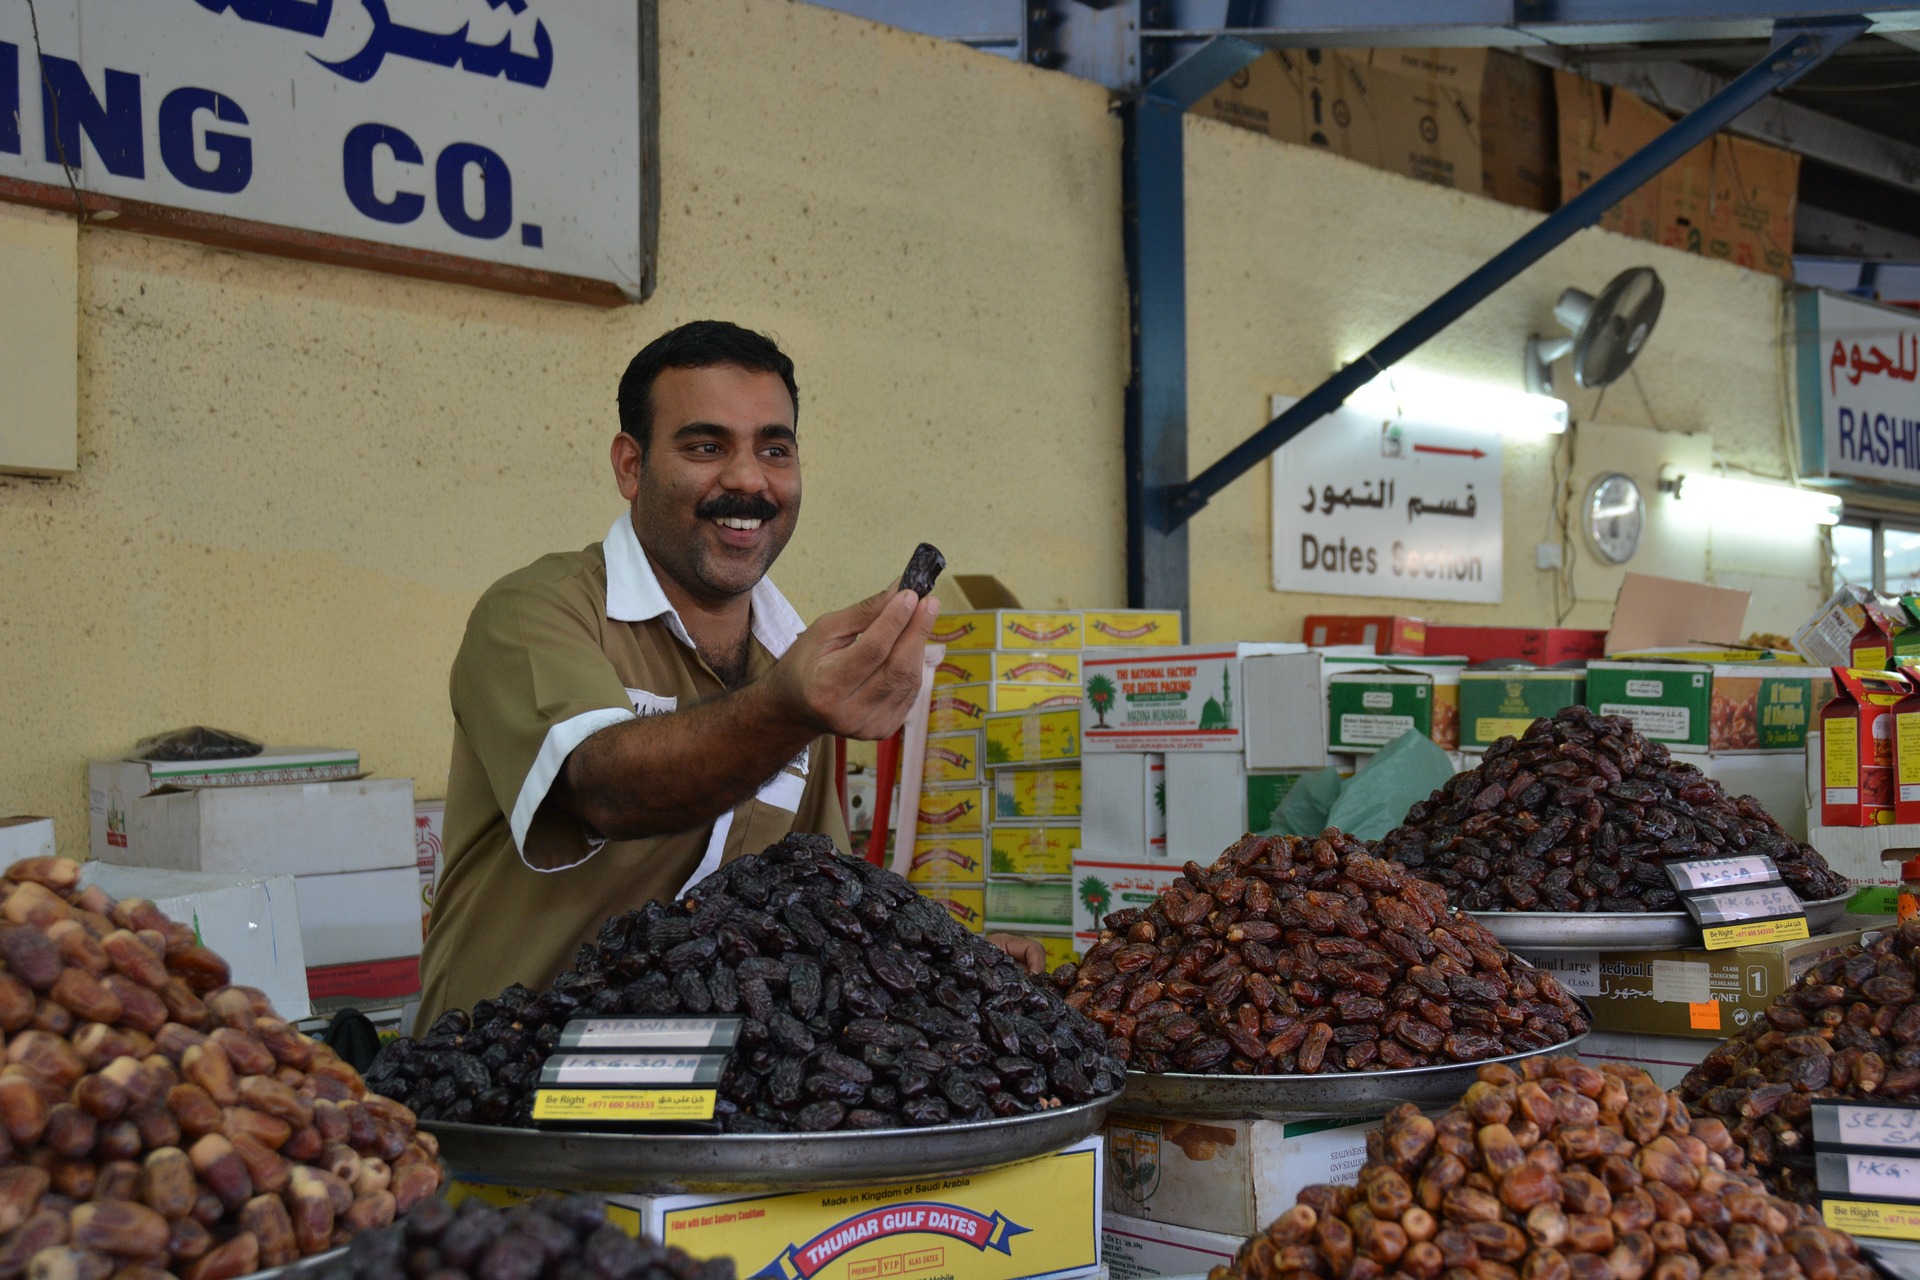 Ein Datteln Verkäufer auf einem Markt in Dubai. Bild von Franz P. Sauerteig auf Pixabay